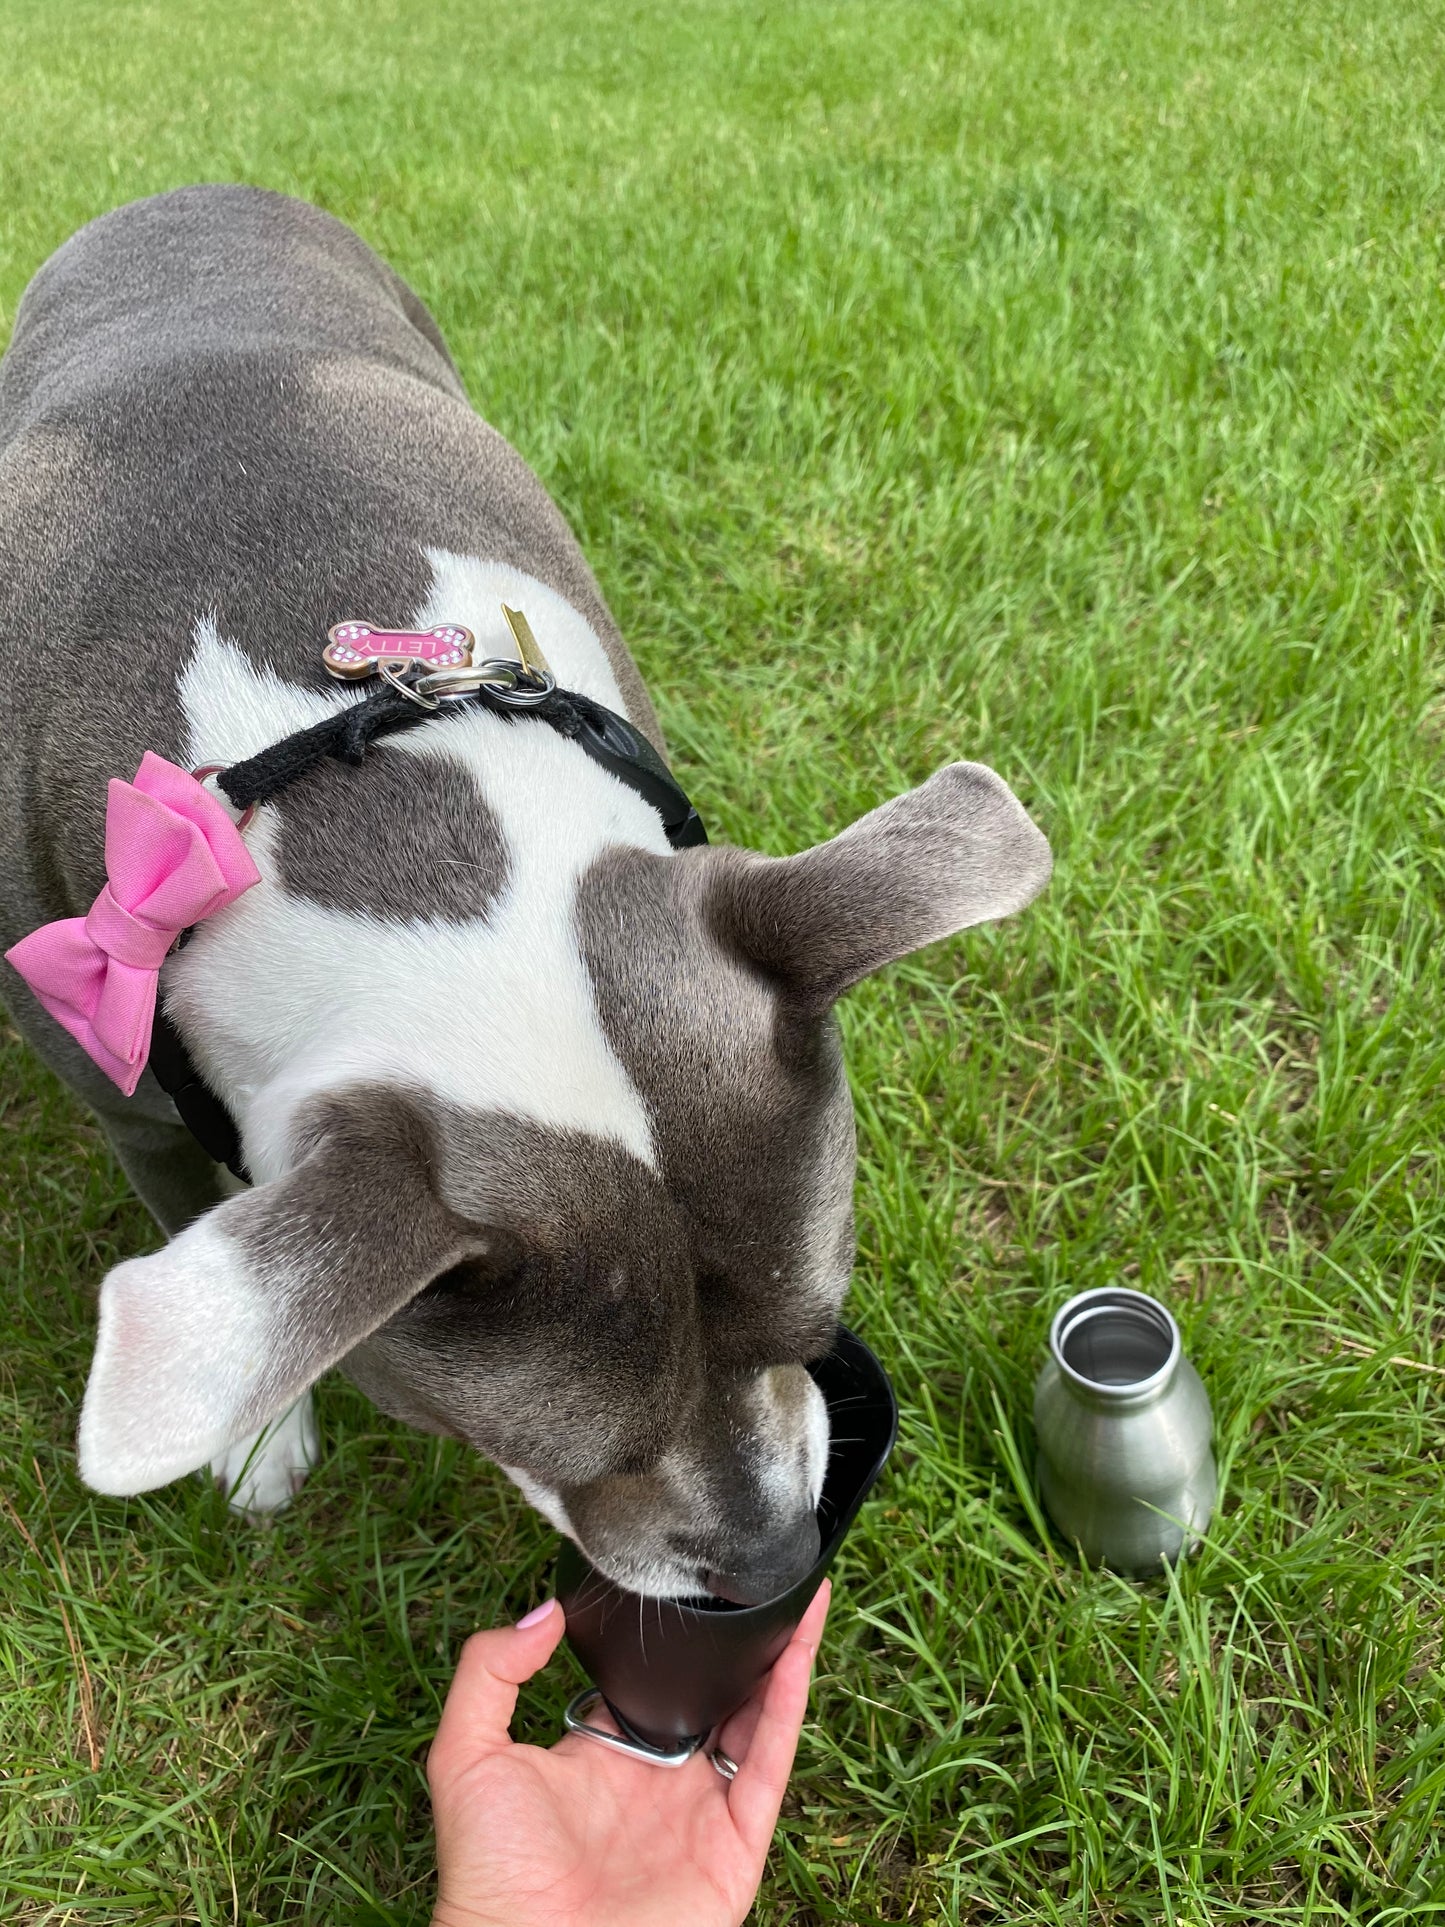 BULPET Dog Lightweight Portable Outdoor Pet Water Bottle Stainless Steel